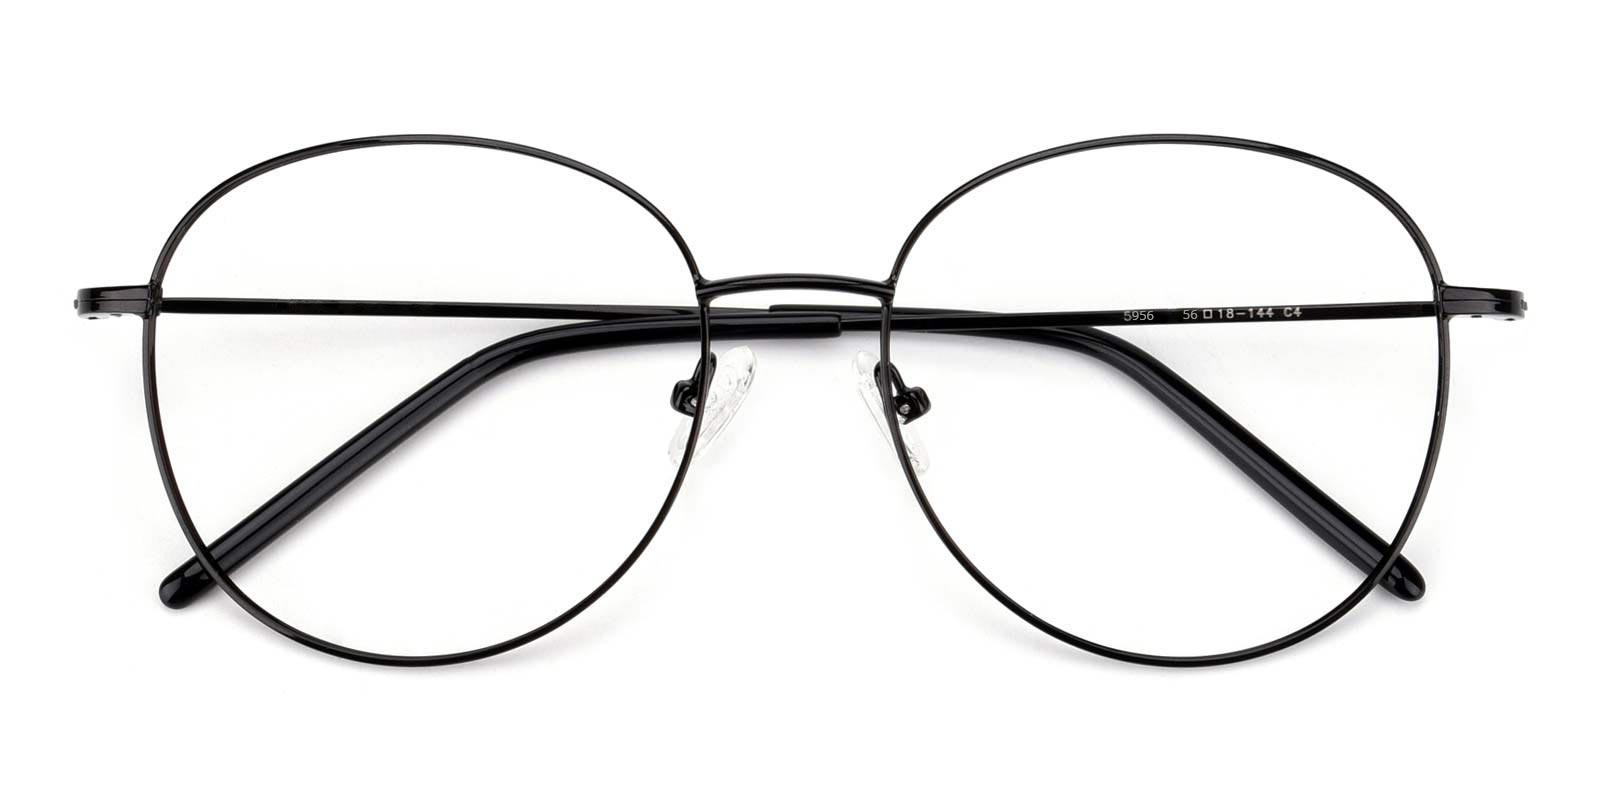 Enid-Black-Square / Round-TR / Metal-Eyeglasses-detail